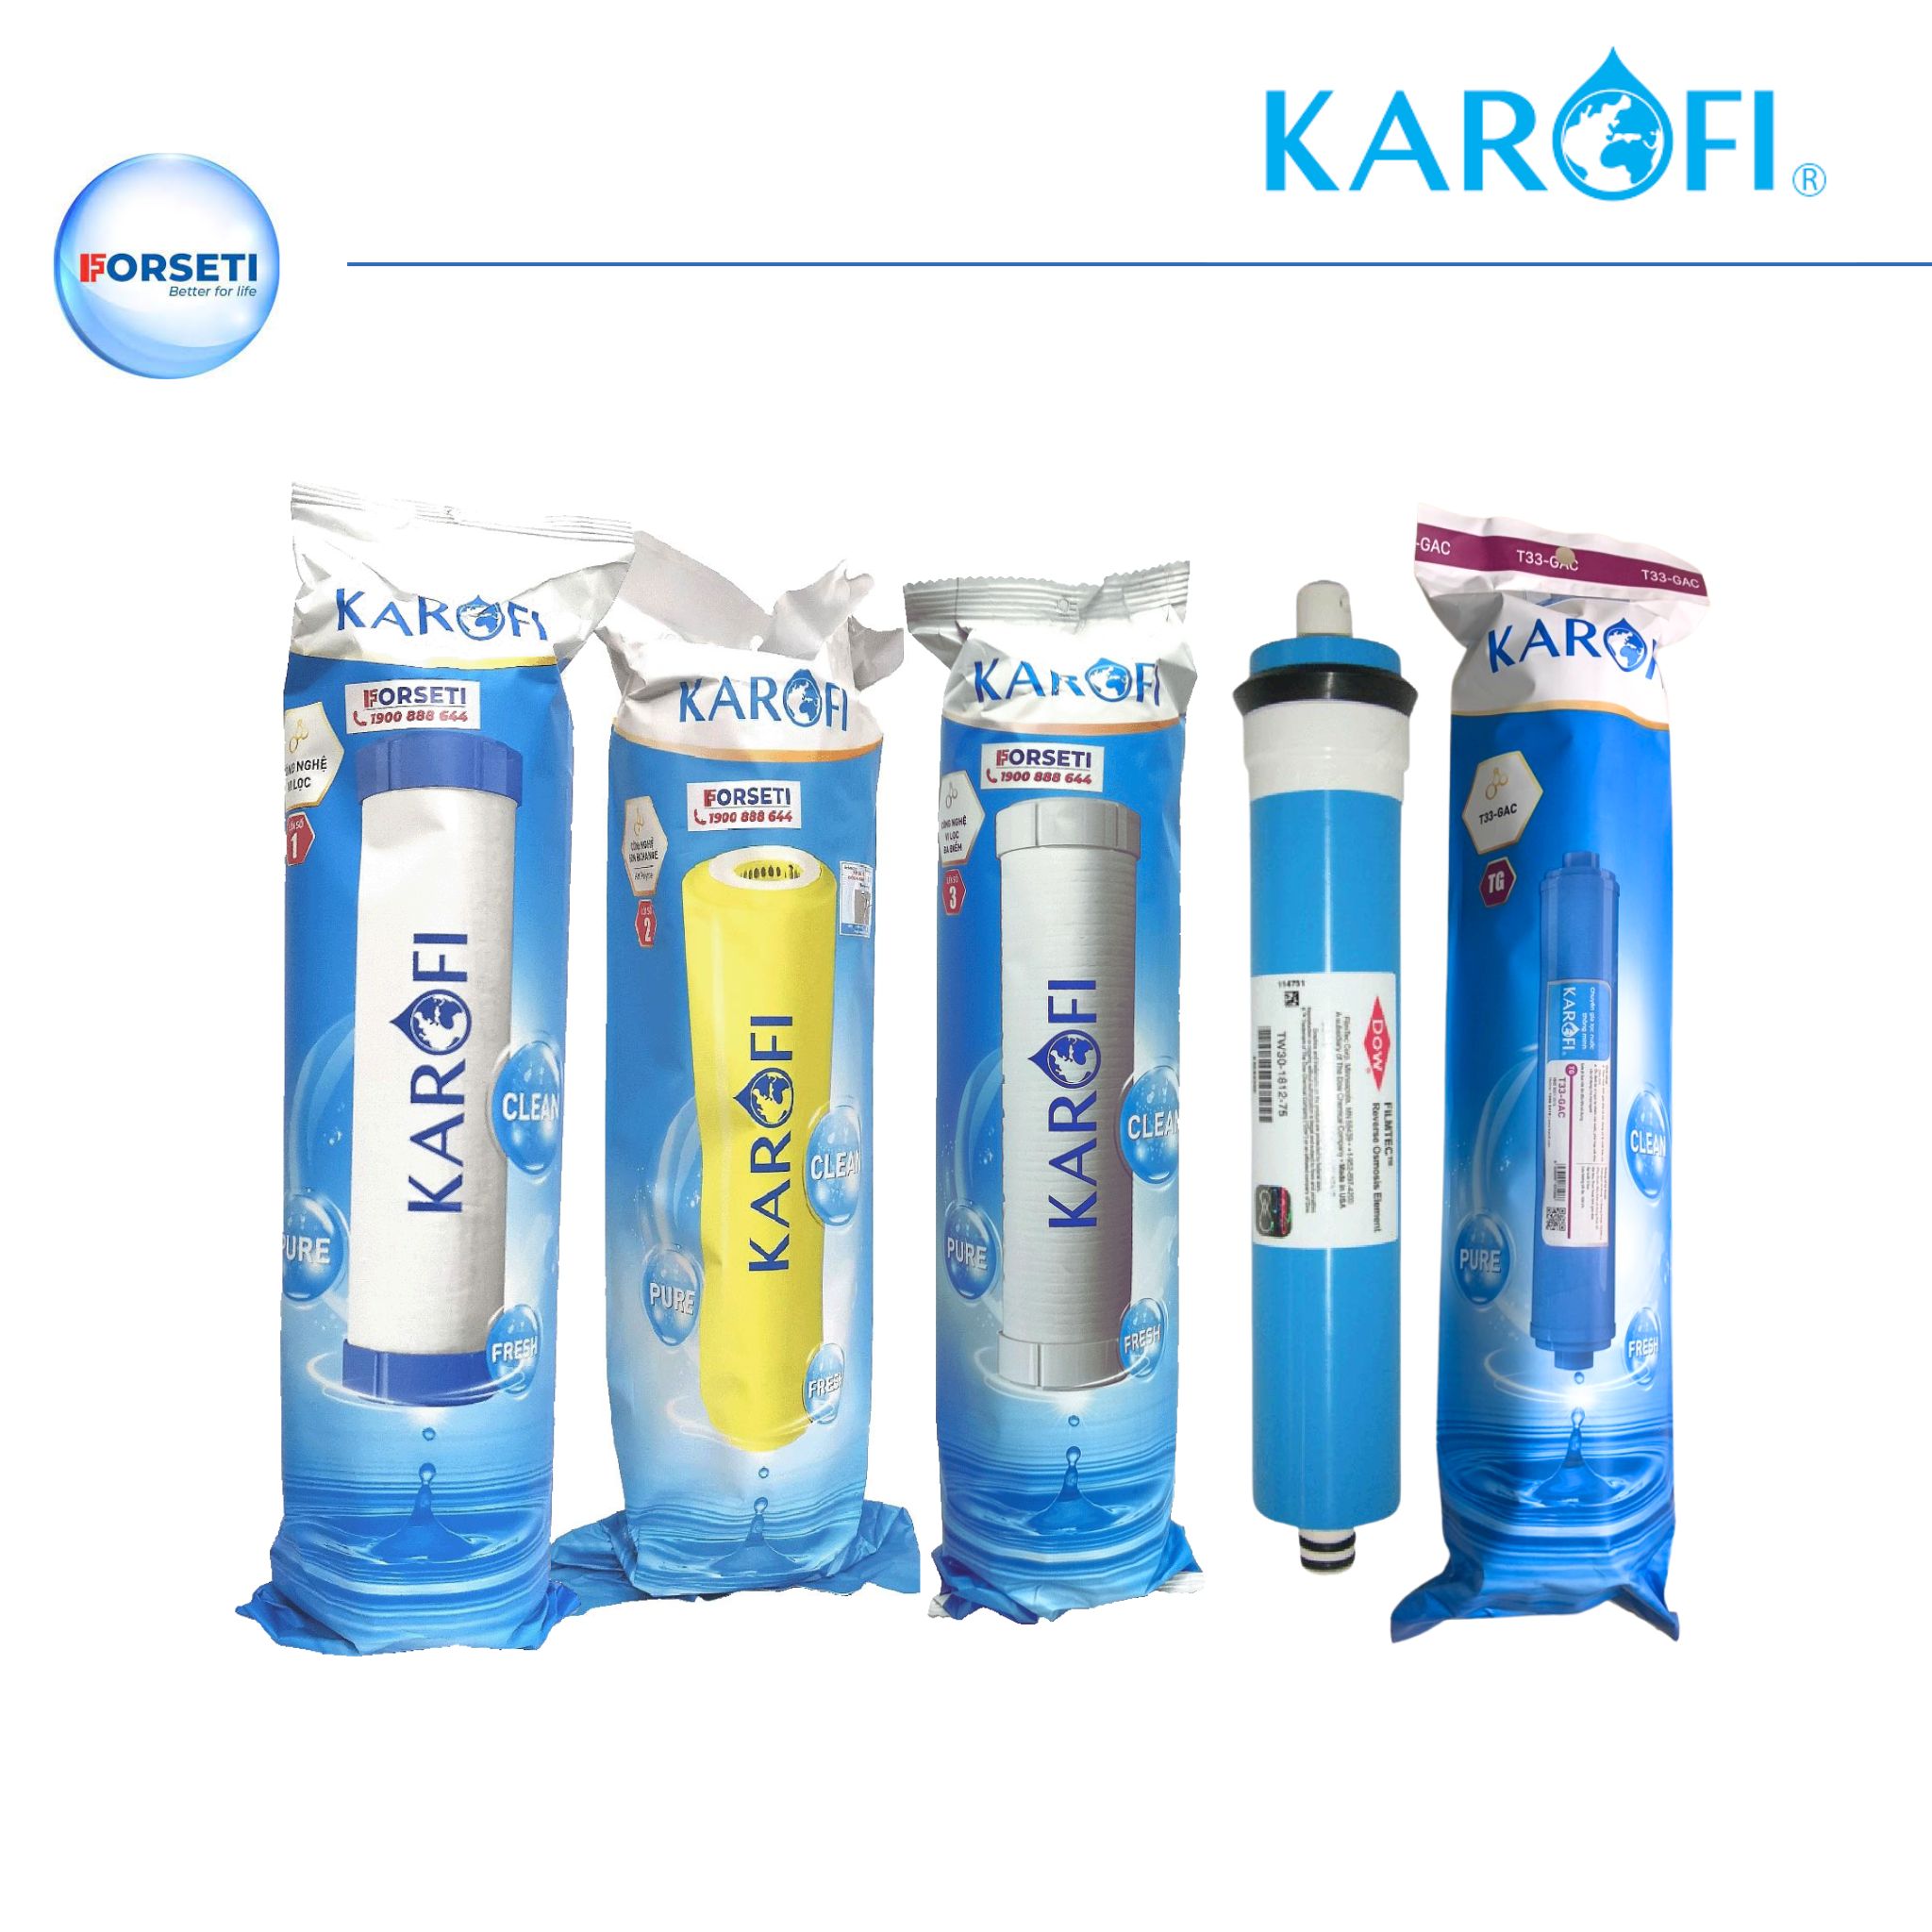 Bộ 5 lõi lọc nước Karofi gồm bộ lọc thô 12 Cation to 3, màng RO 50 US và lõi chức năng T33 dành cho máy lọc nước Karofi - Hàng chính hãng